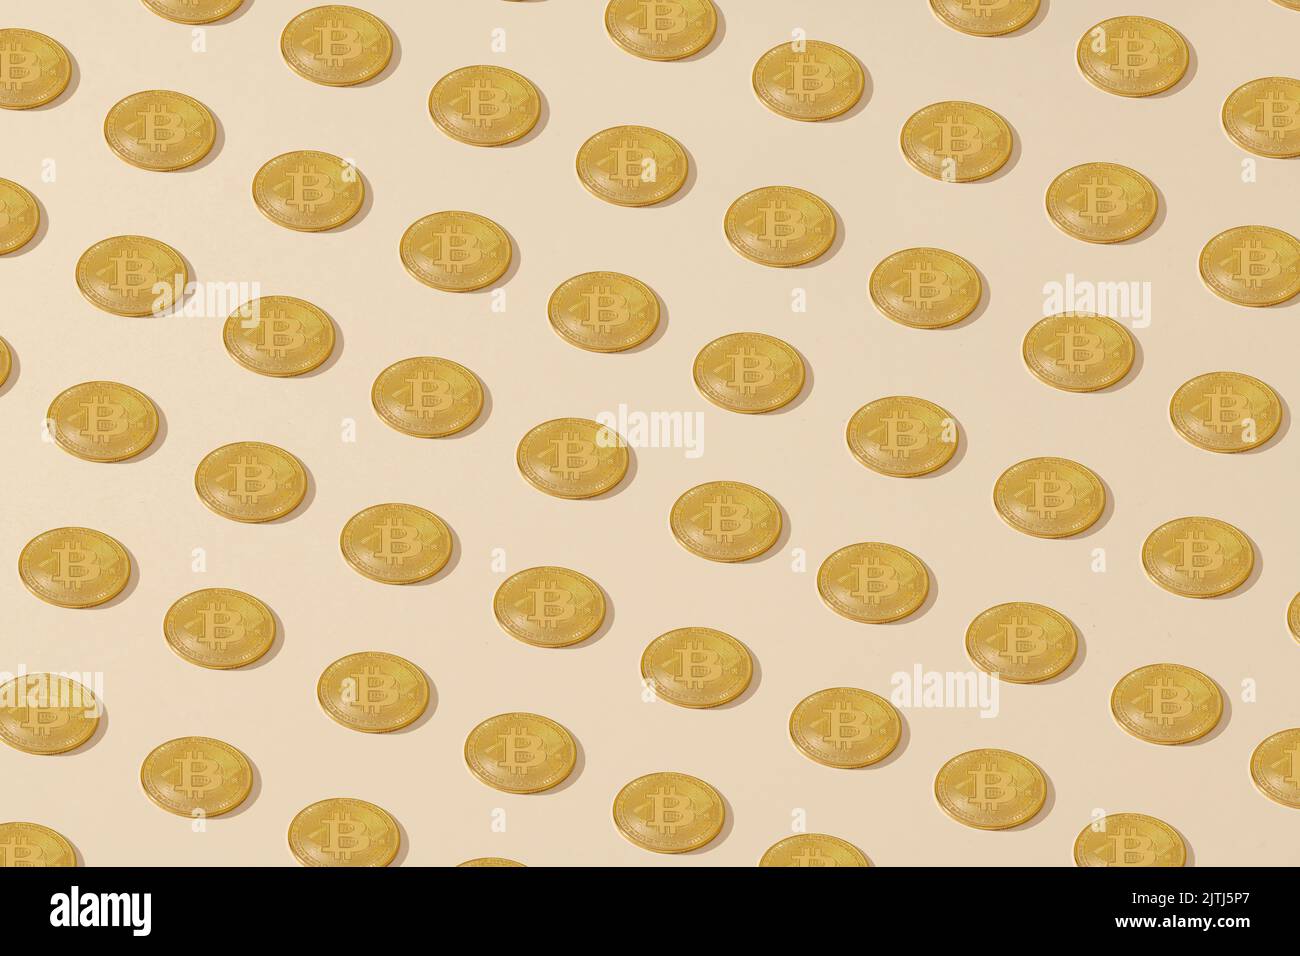 Bitcoin. Monete di bitcoin giallo dorato posizionate isometricamente su uno sfondo crema Foto Stock